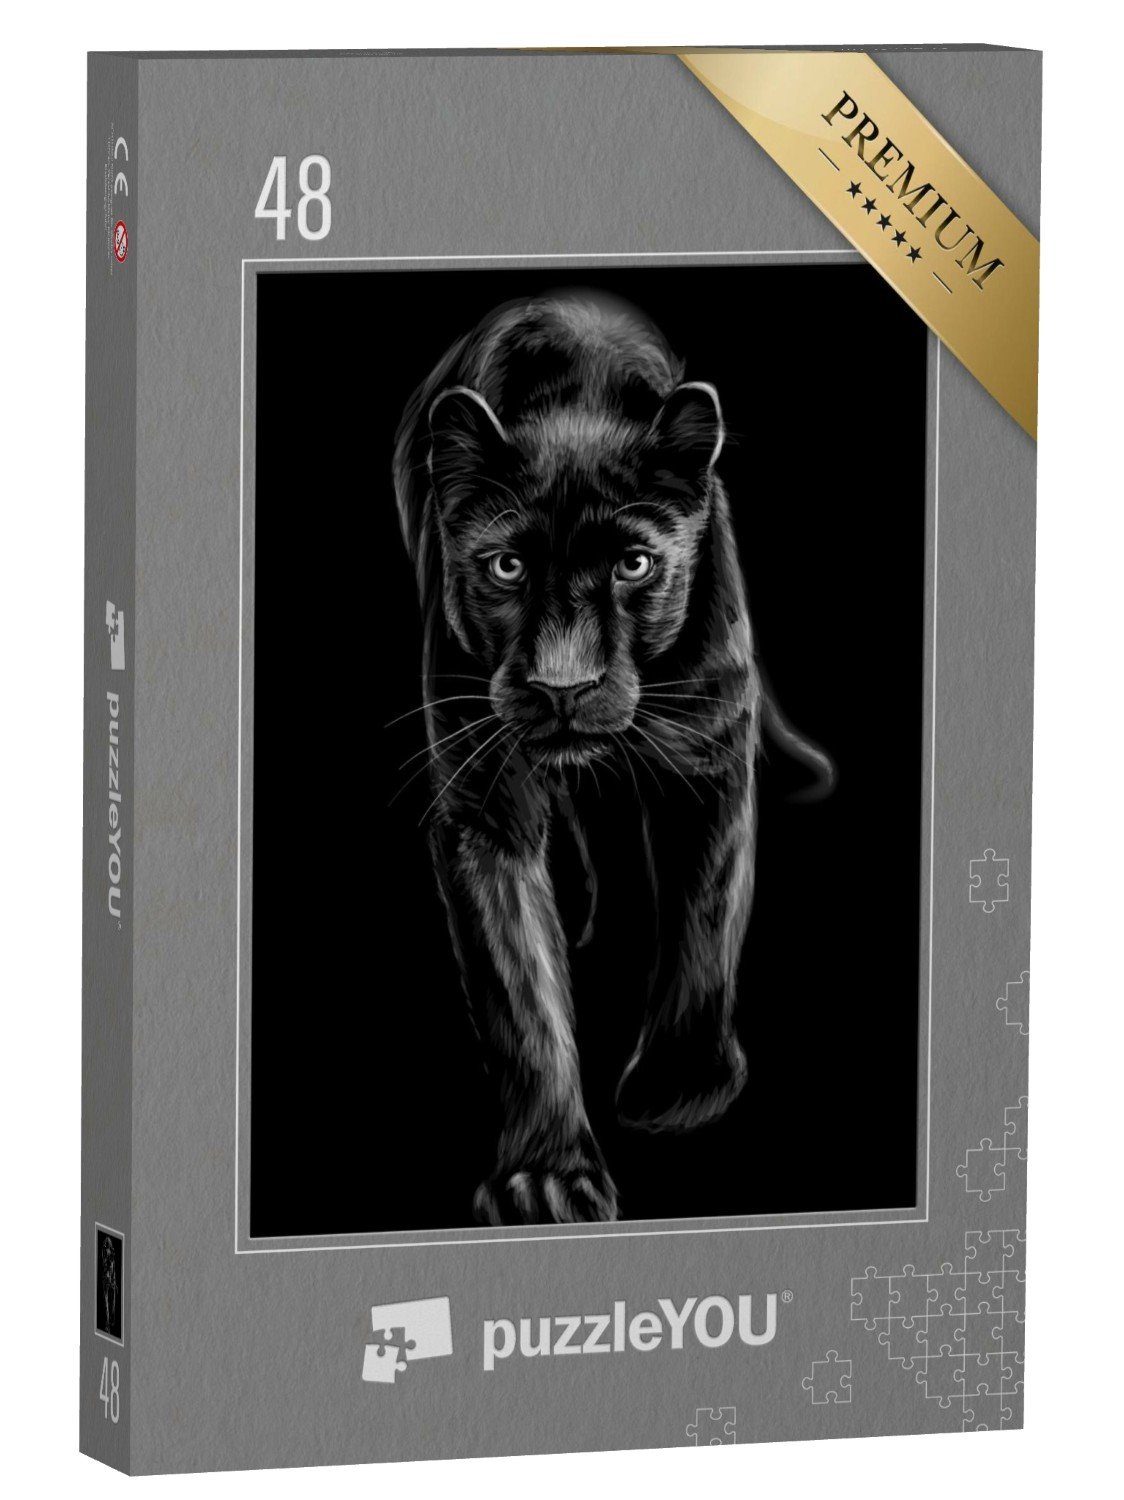 puzzleYOU Puzzle Panther: skizzenhaftes, schwarz-weiß Porträt, 48 Puzzleteile, puzzleYOU-Kollektionen Panther, Tiere in Dschungel & Regenwald